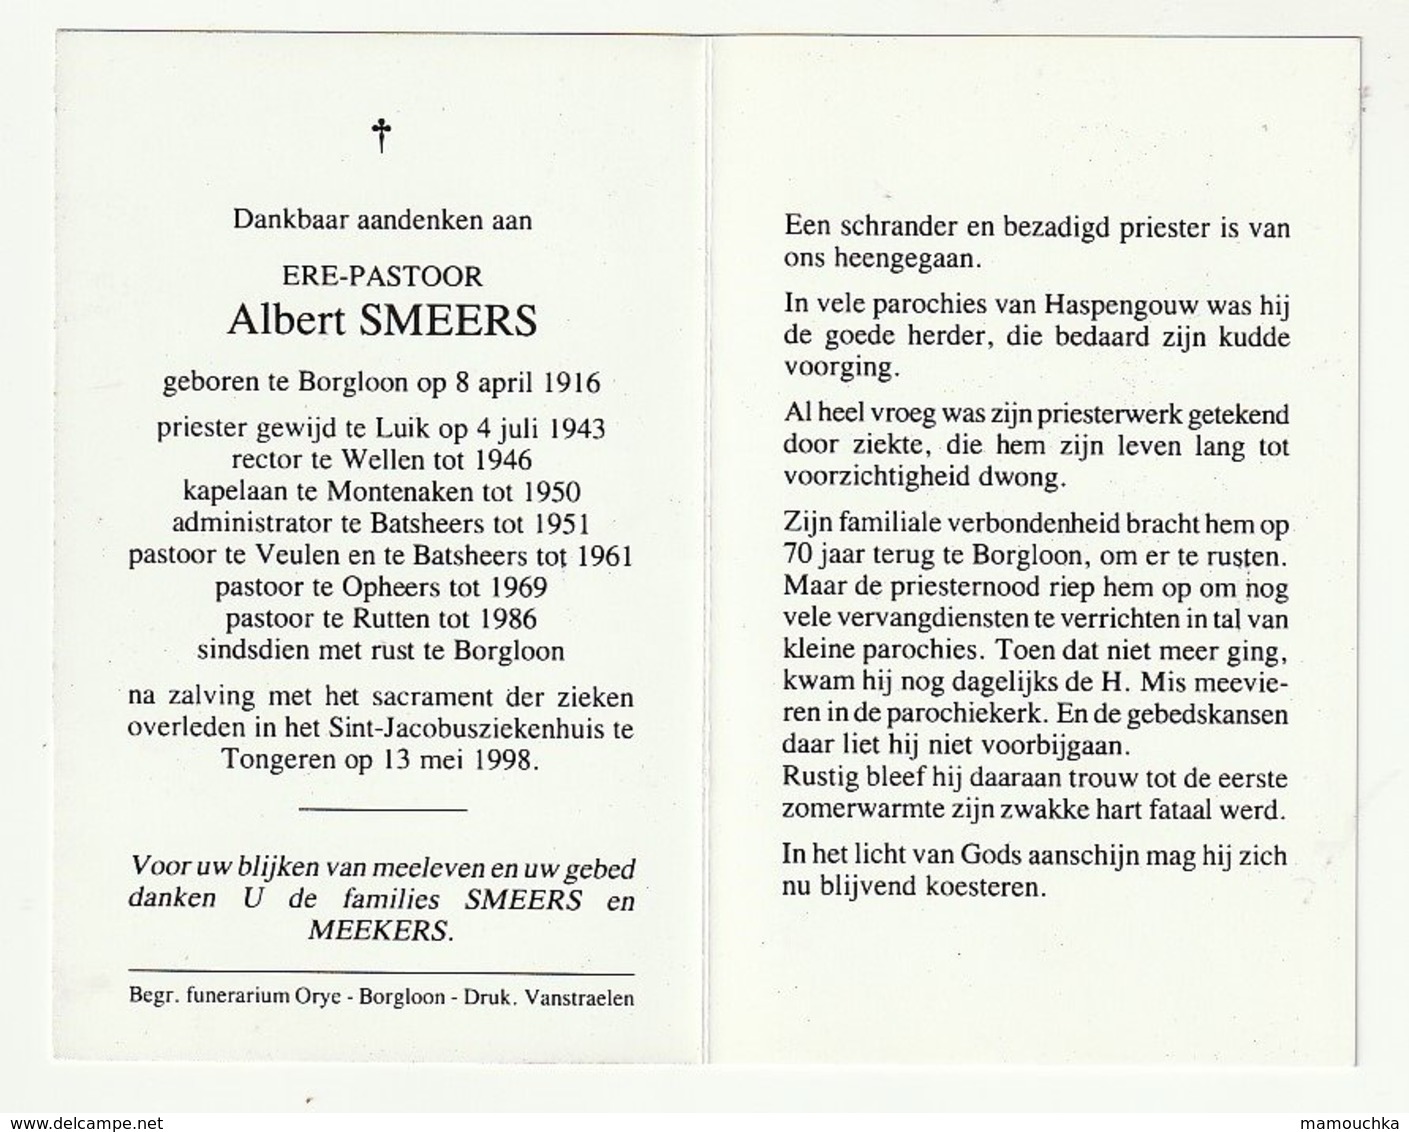 Doodsprentje Albert SMEERS Borgloon 1916 Priester Luik Liège Wellen Montenaken Batsheers Opheers Rutten Tongeren 1998 - Devotion Images